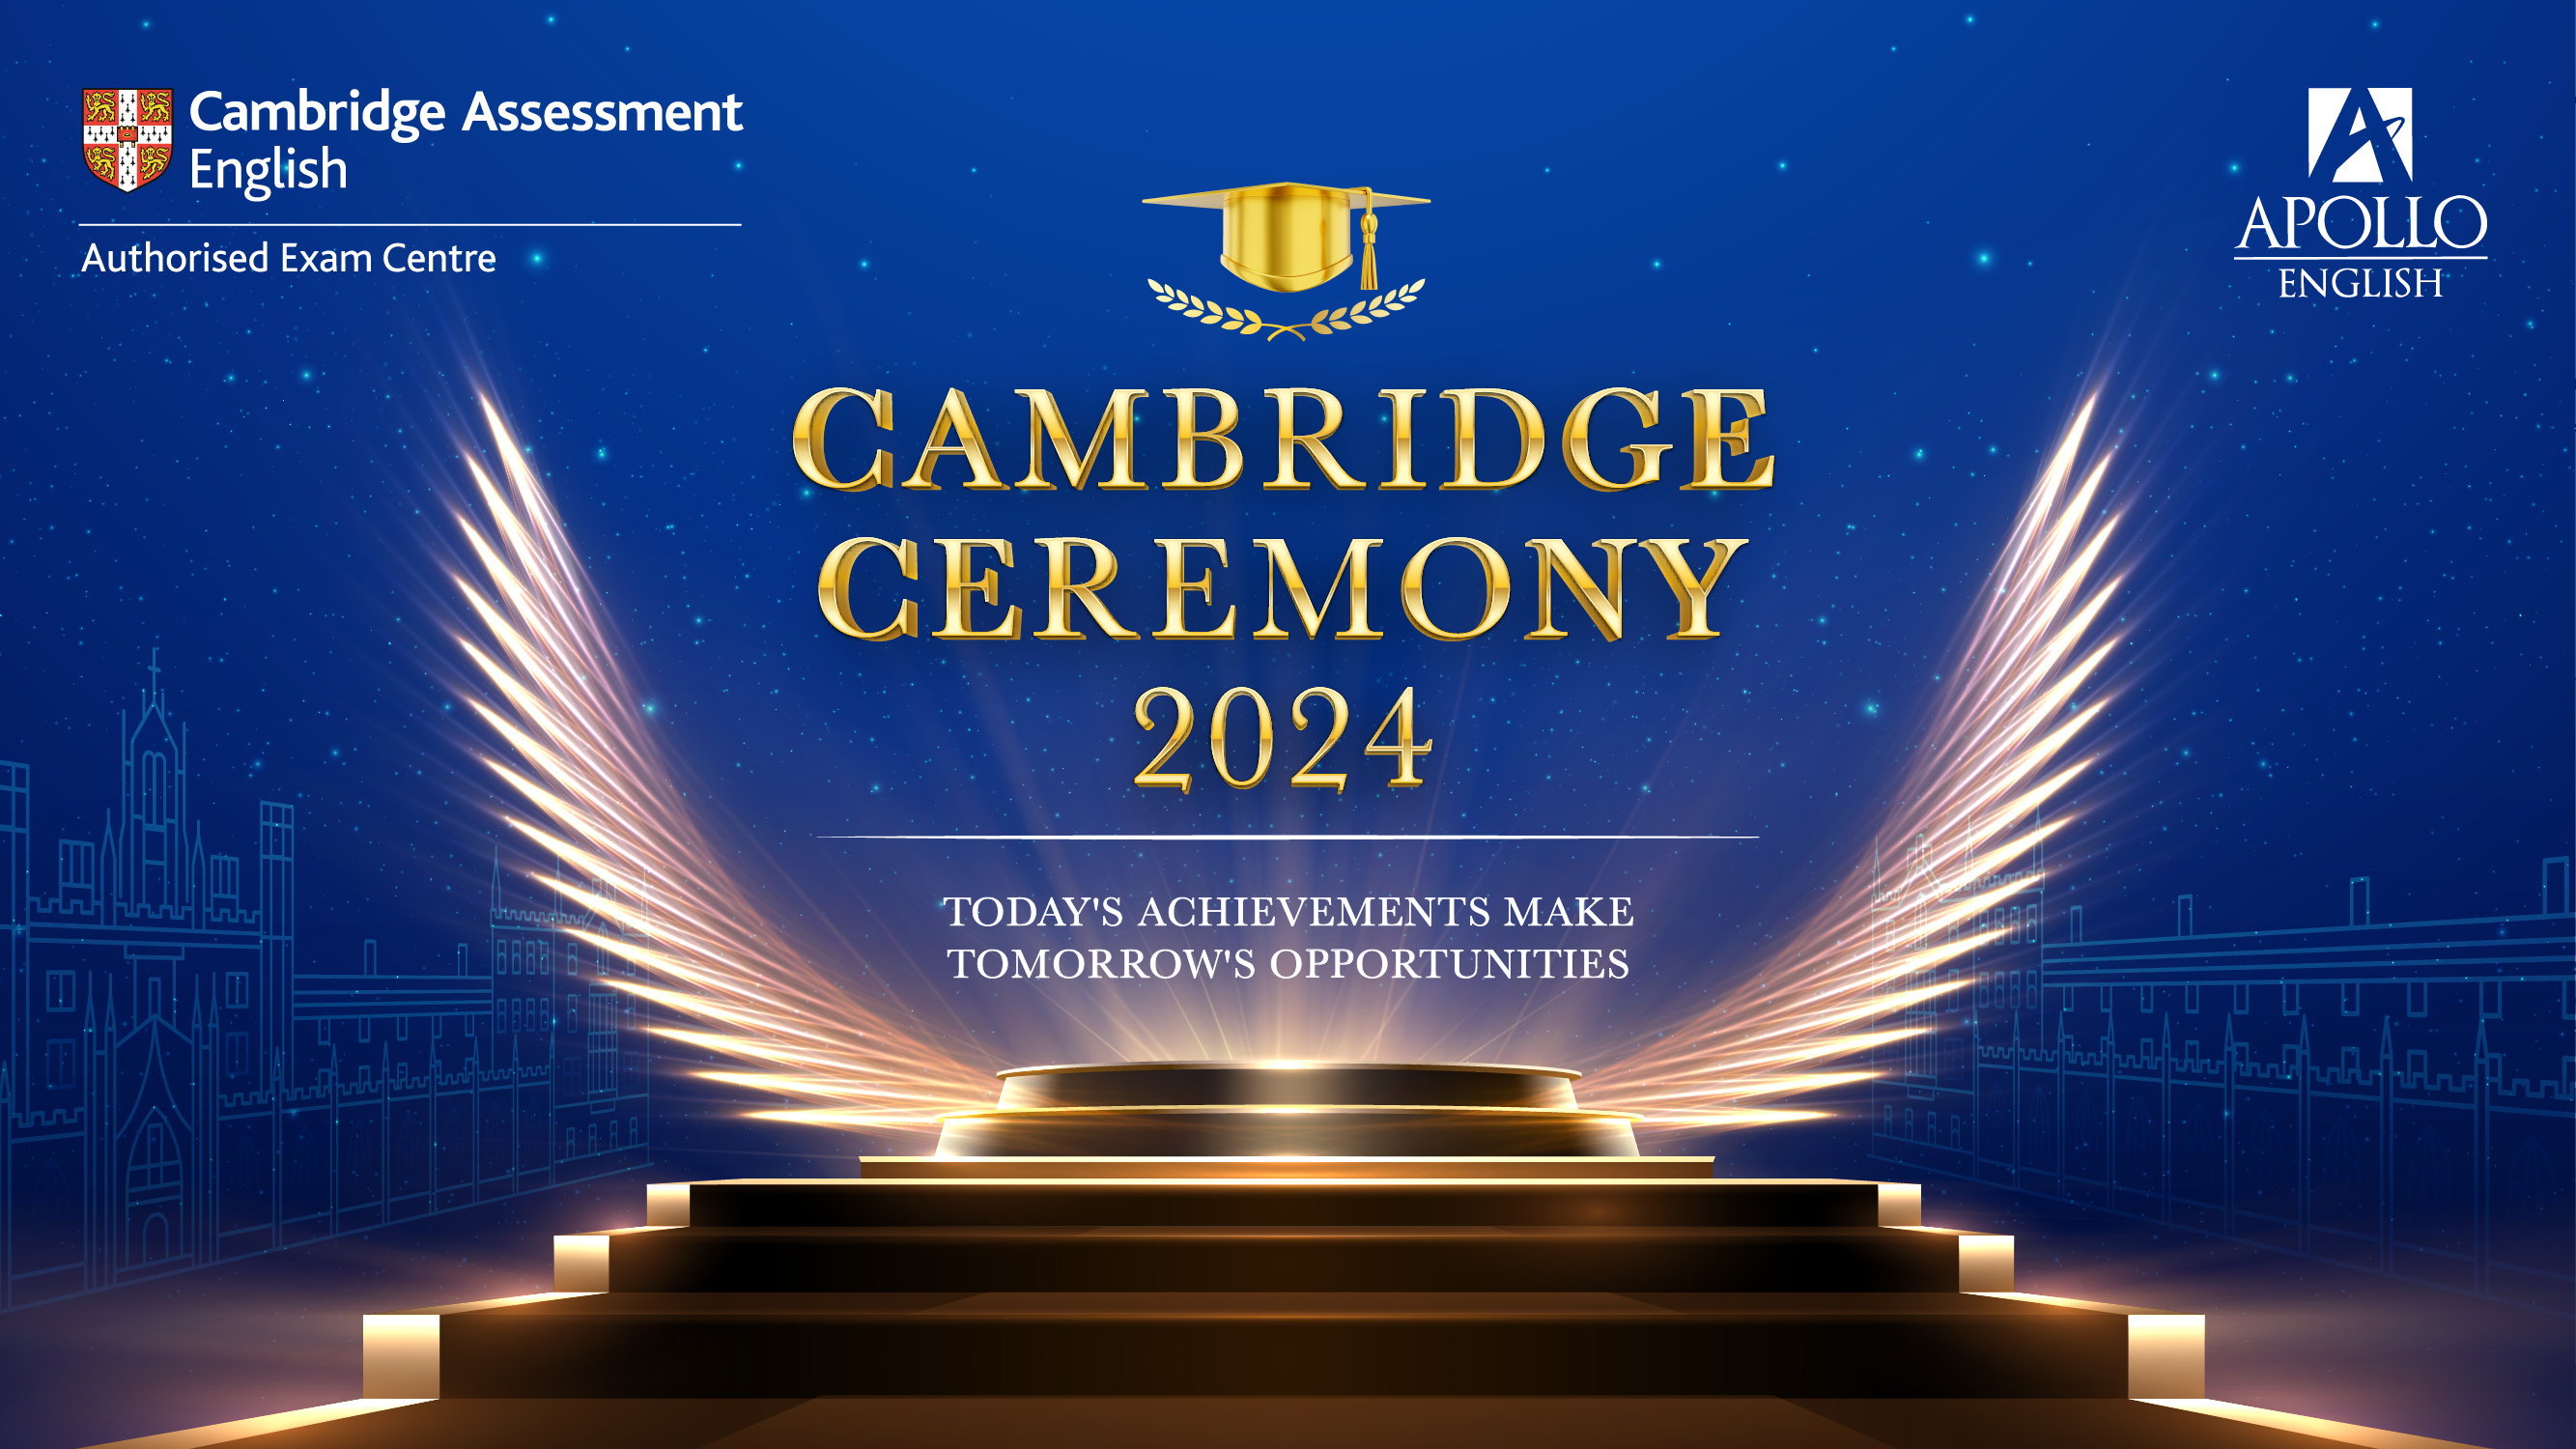 LỄ TRAO CHỨNG CHỈ CAMBRIDGE 2024 - KHU VỰC MIỀN NAM